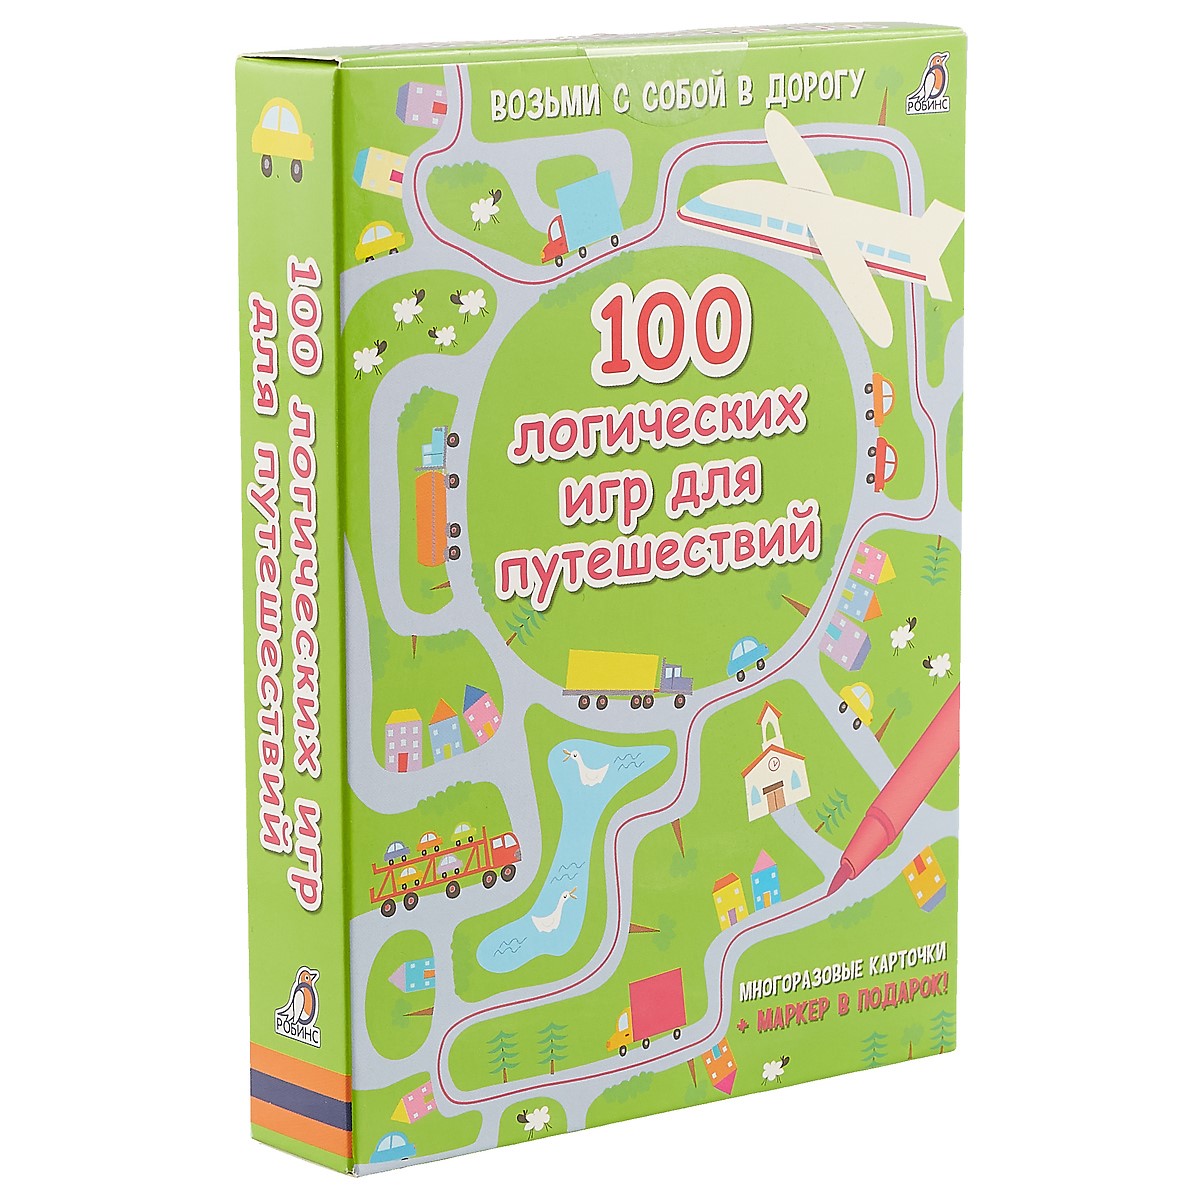 Асборн - карточки. 100 логических игр для путешествий карточки 100 логических игр для путешествий робинс детям